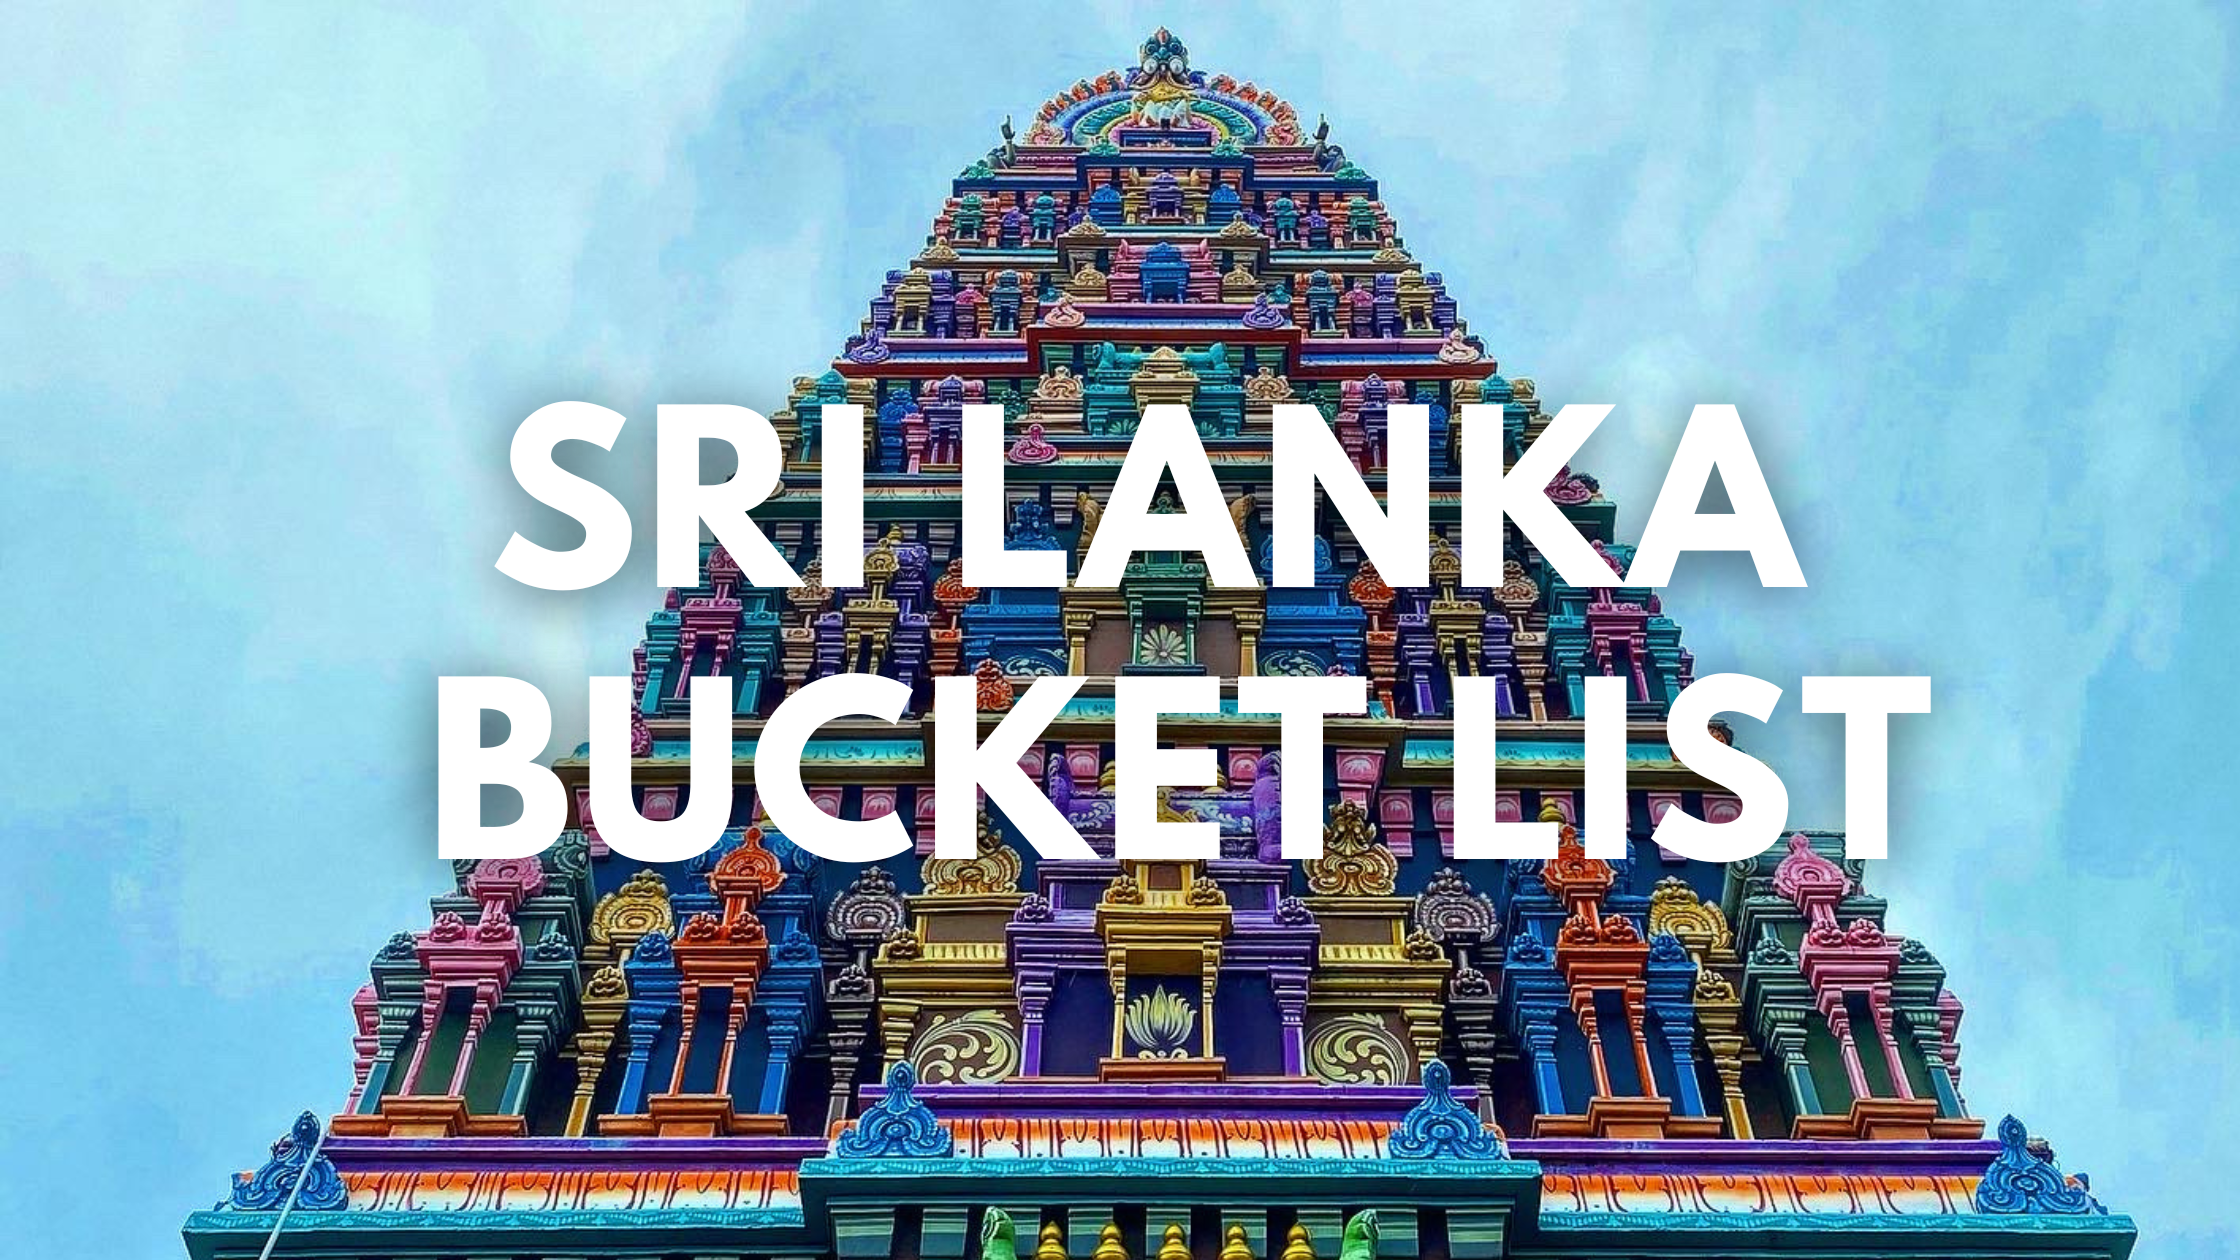 Sri Lanka Bucket List